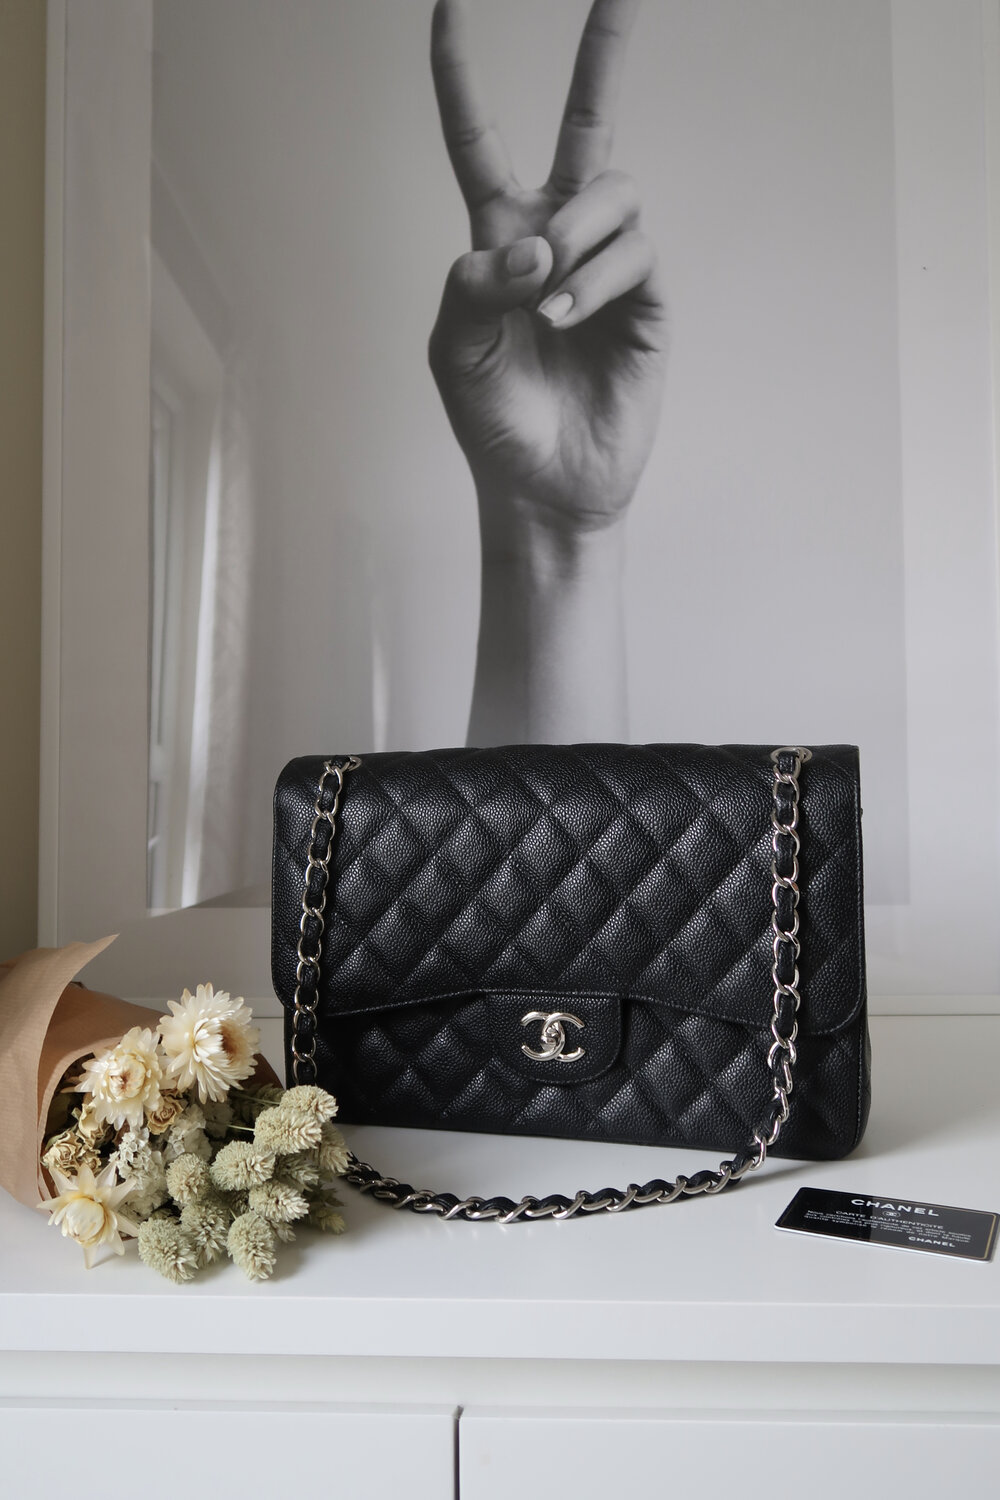 Chanel Large Black Caviar Classic Double Flap, 2015-2016 — Blaise